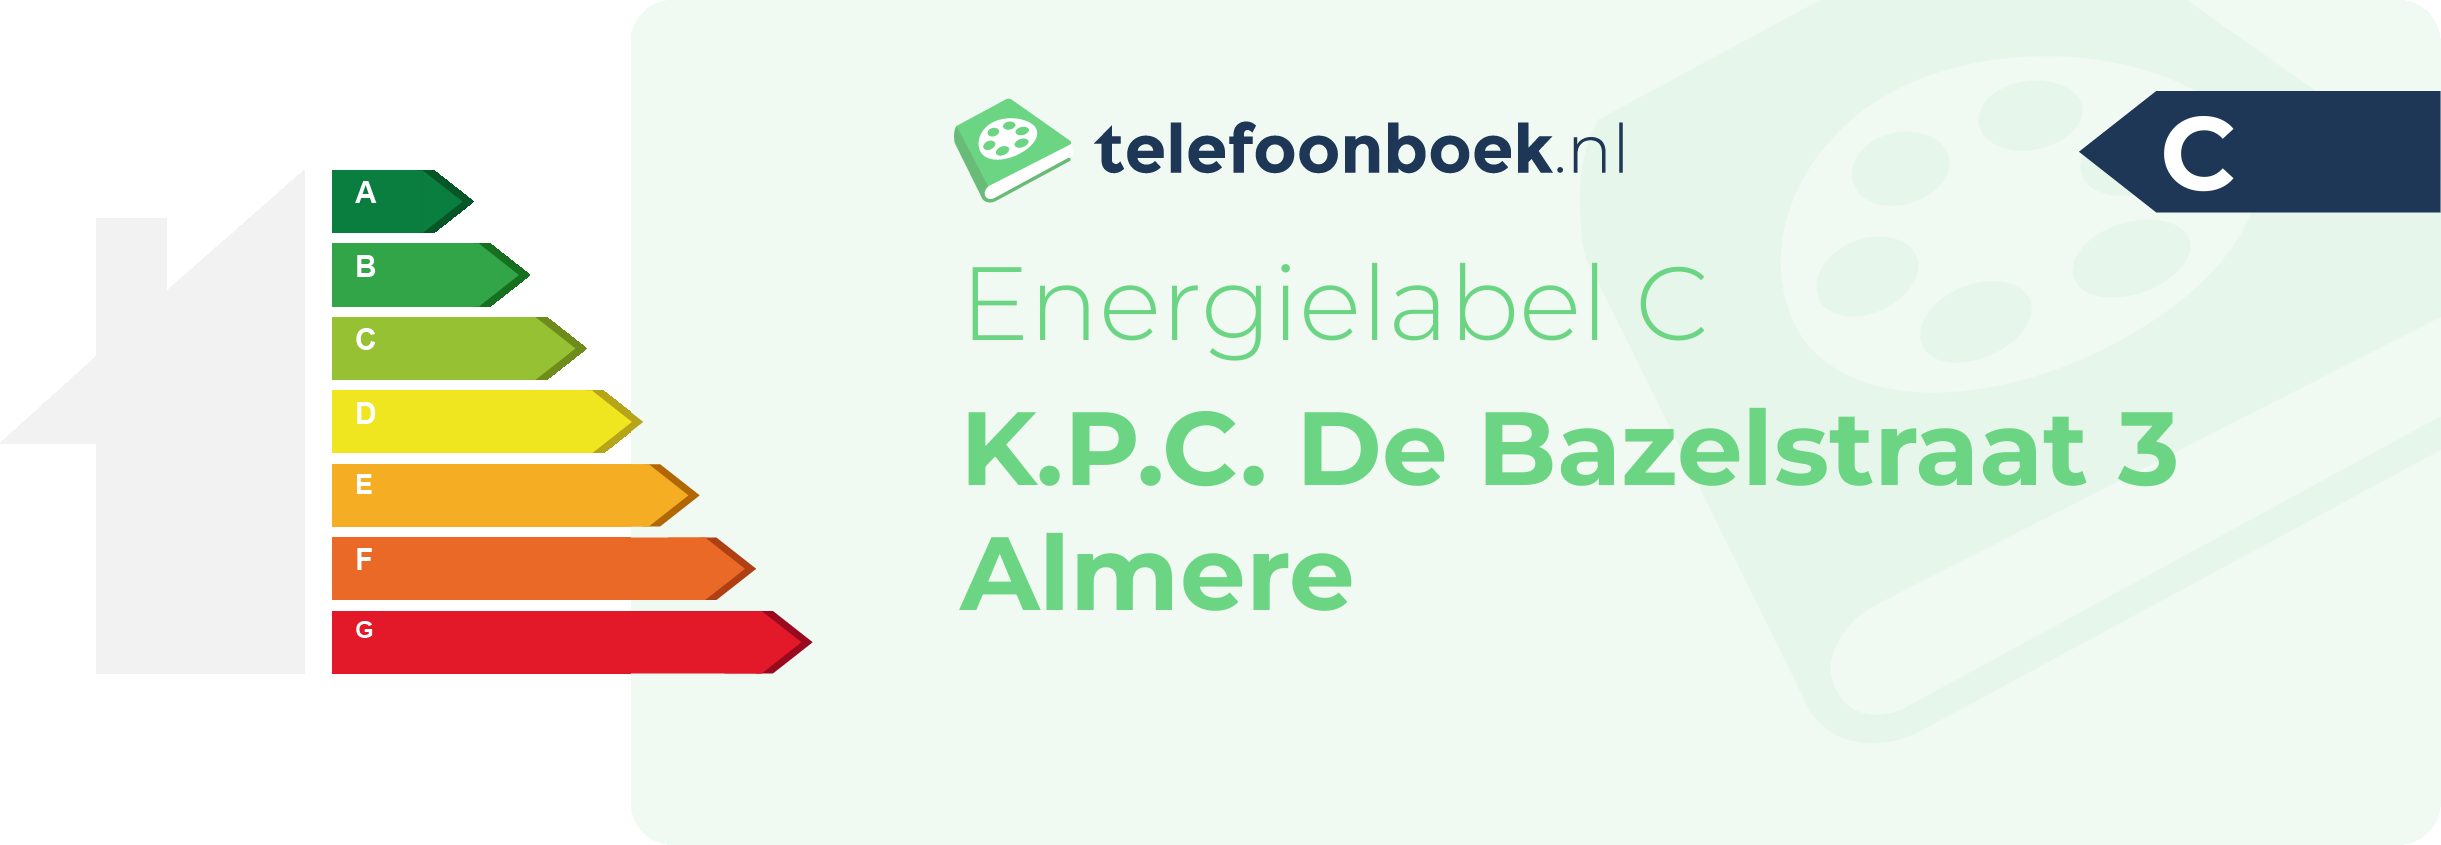 Energielabel K.P.C. De Bazelstraat 3 Almere